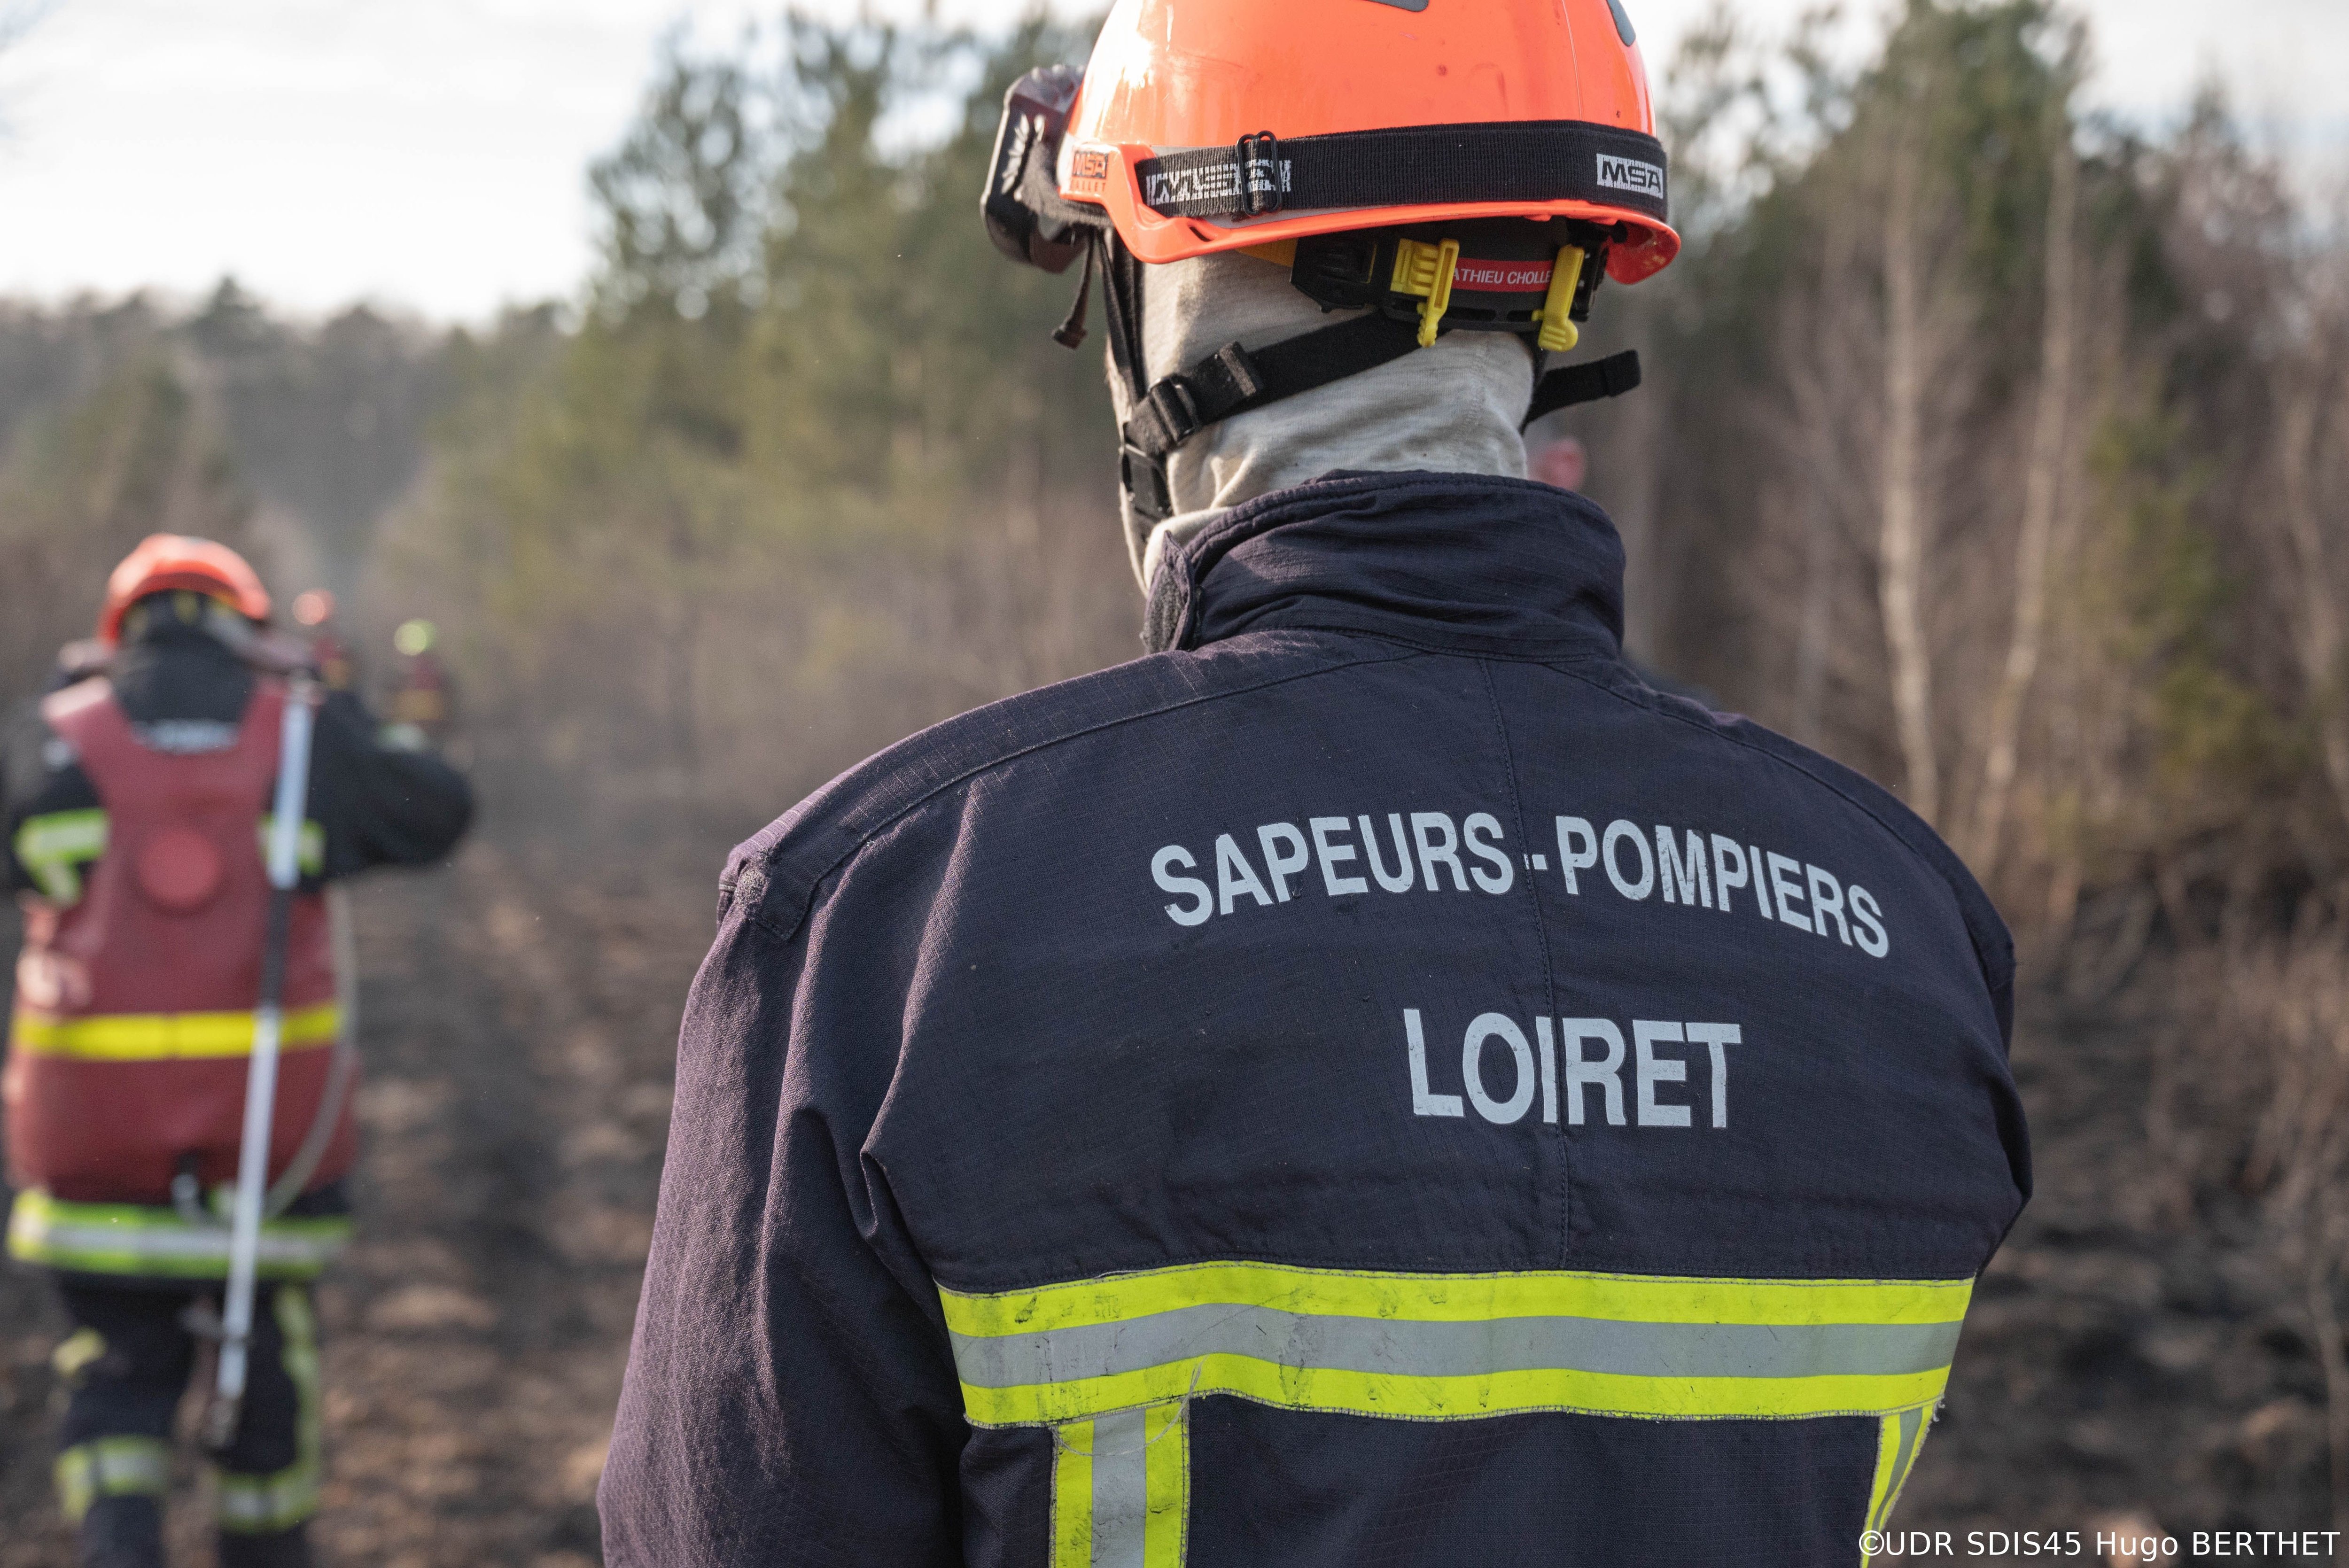 Les pompiers du Loiret ont éteint près de 400 départs de feu l'été dernier, et le risque s'amplifie d'année en année sous l'effet du changement climatique./DR/SDIS45/Hugo Berthet